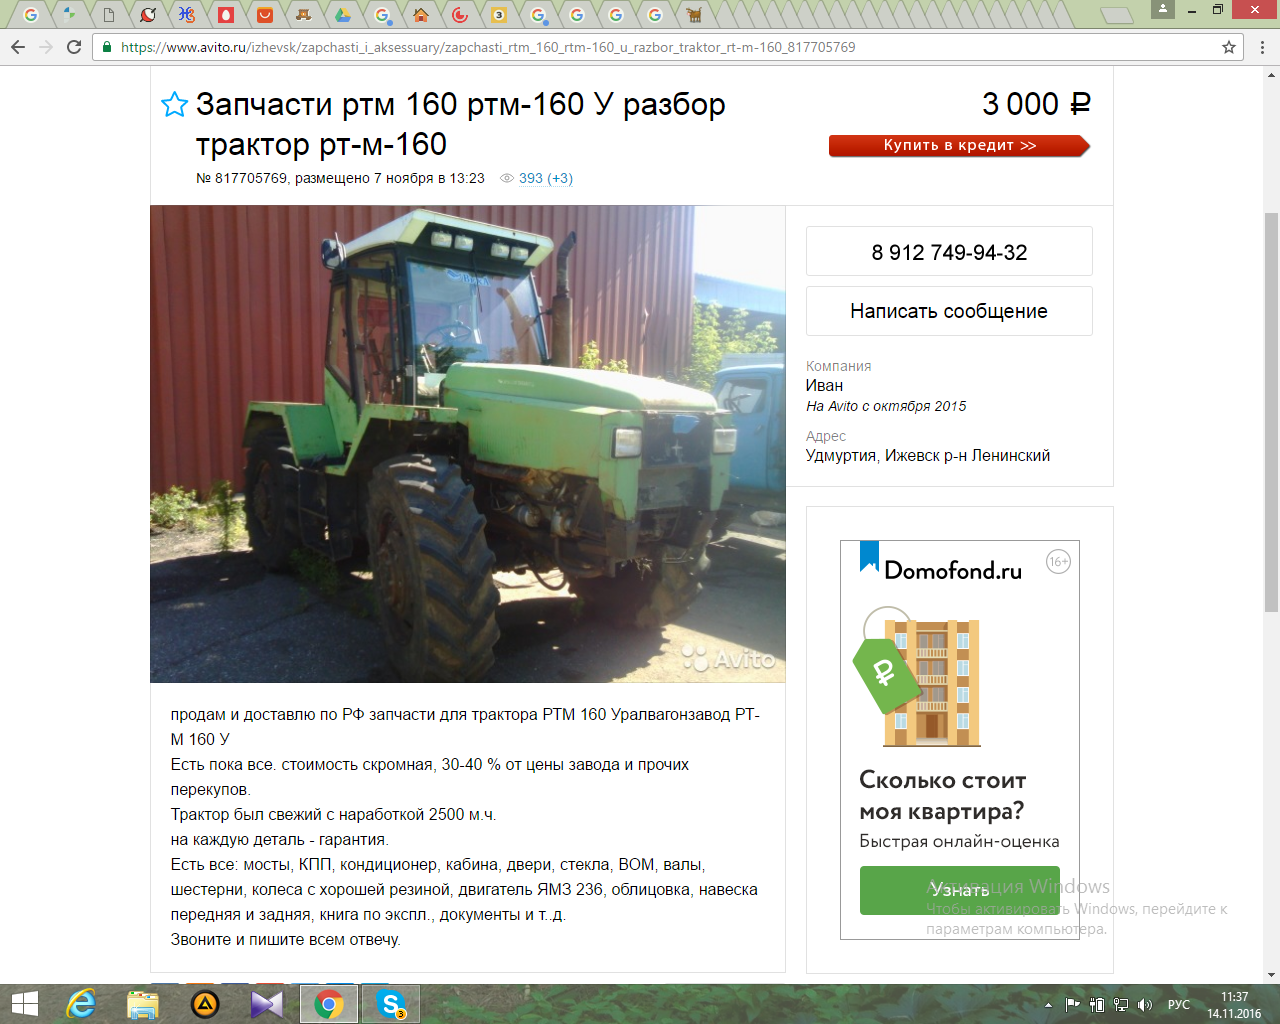 ✅ трактор рт-м-160: технические характеристики, отзывы владельцев, сфера применения, видео - tym-tractor.ru